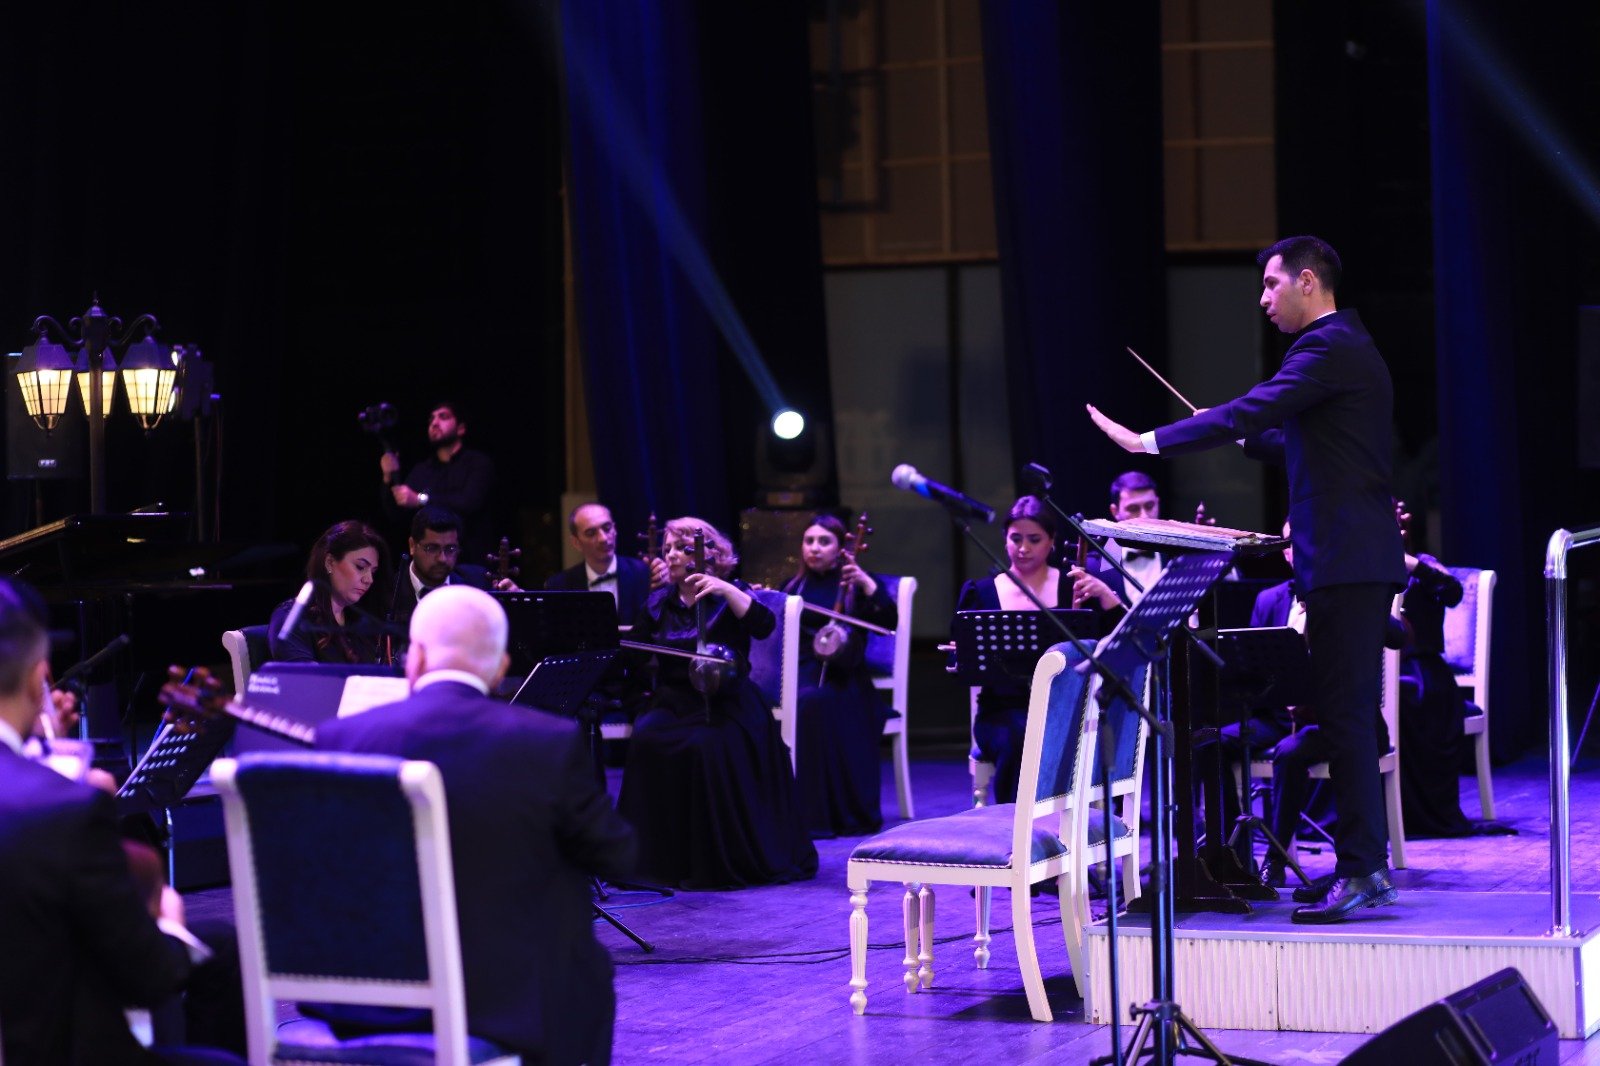 В Гяндже состоялся торжественный вечер закрытия проекта "Культурное достояние народа", посвященный 100-летию Сулеймана Алескерова (ФОТО)